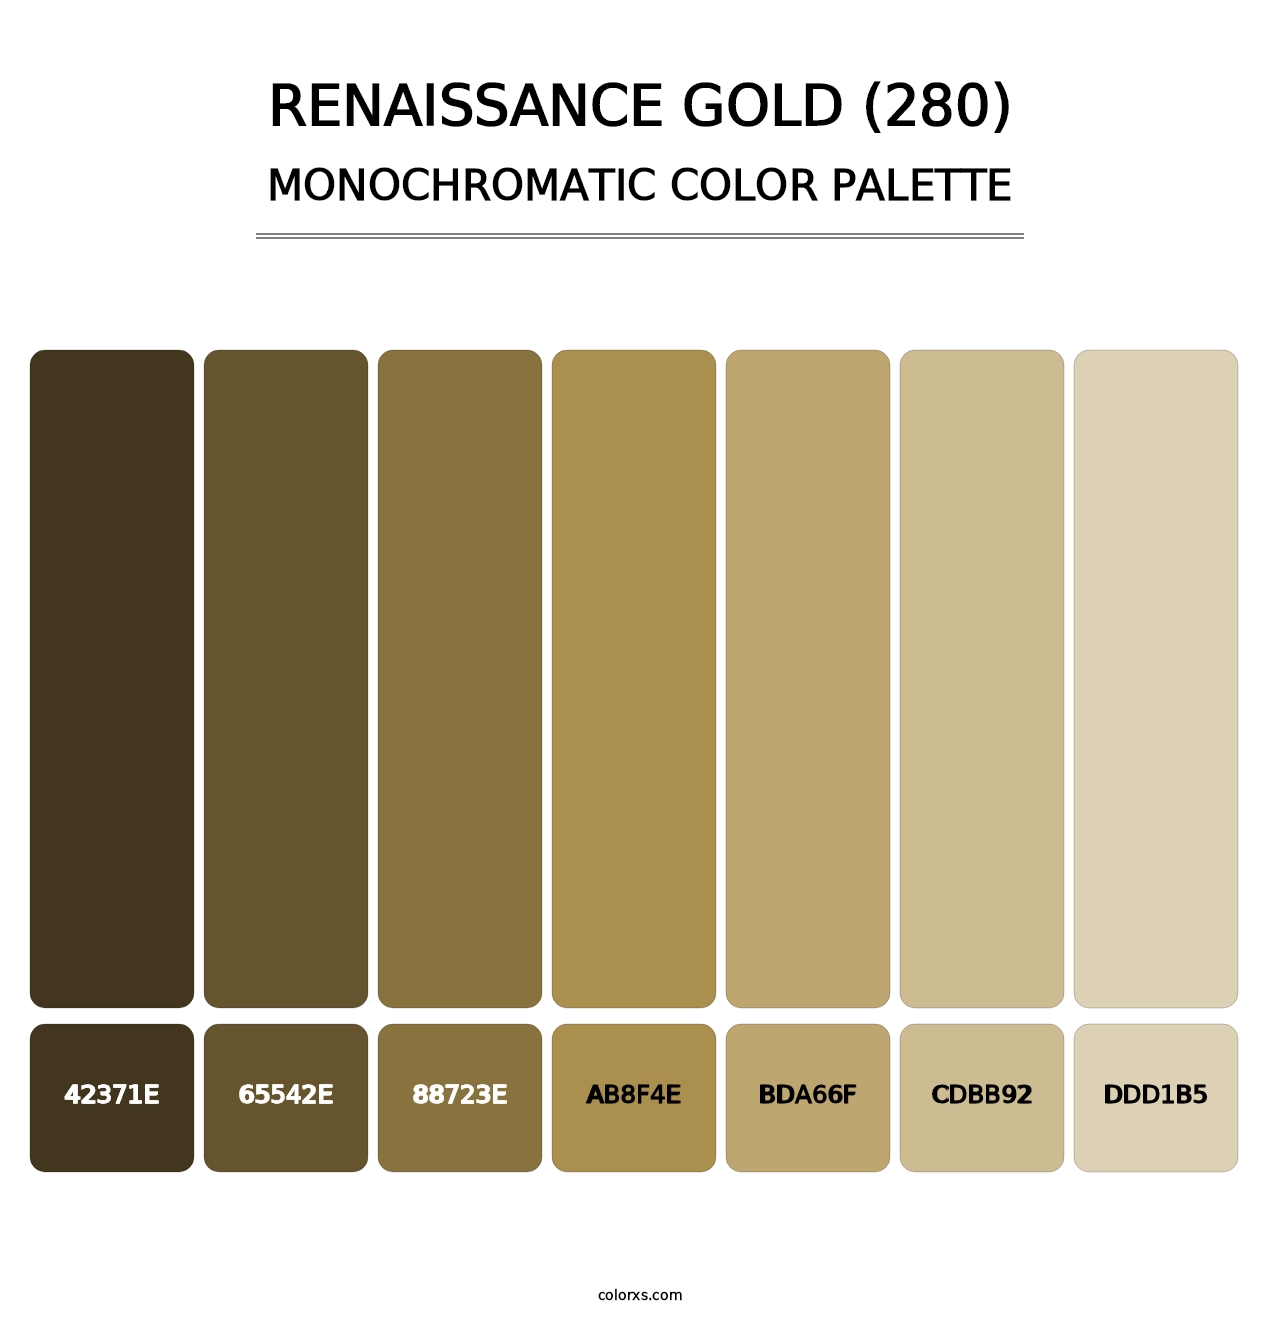 Renaissance Gold (280) - Monochromatic Color Palette